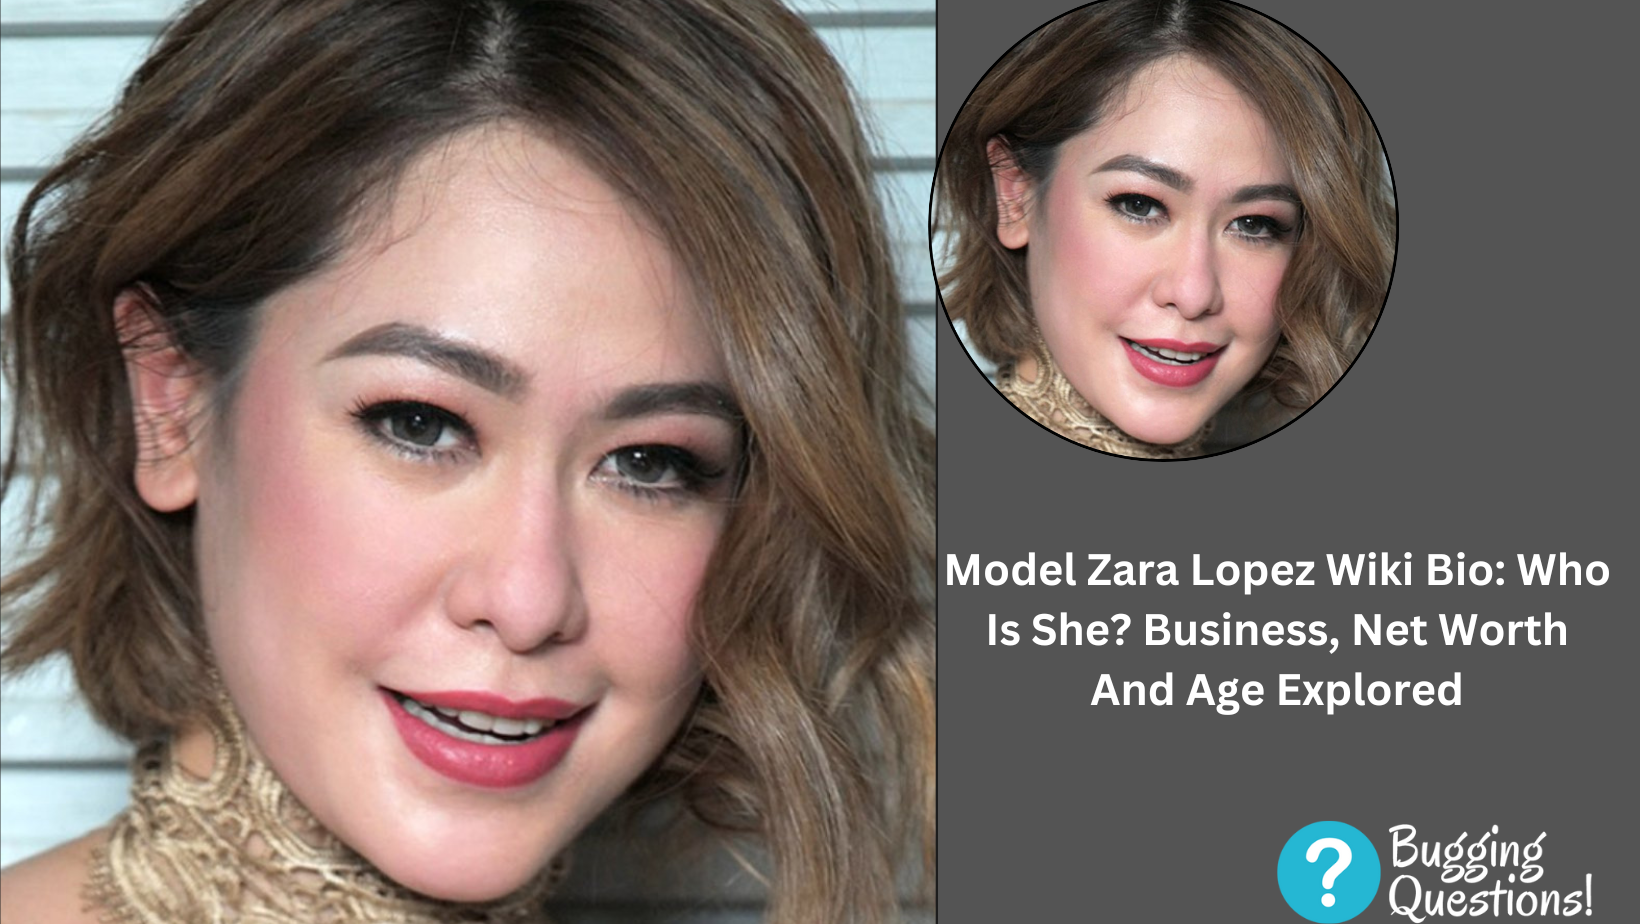 Model Zara Lopez Wiki Bio: Who Is She?